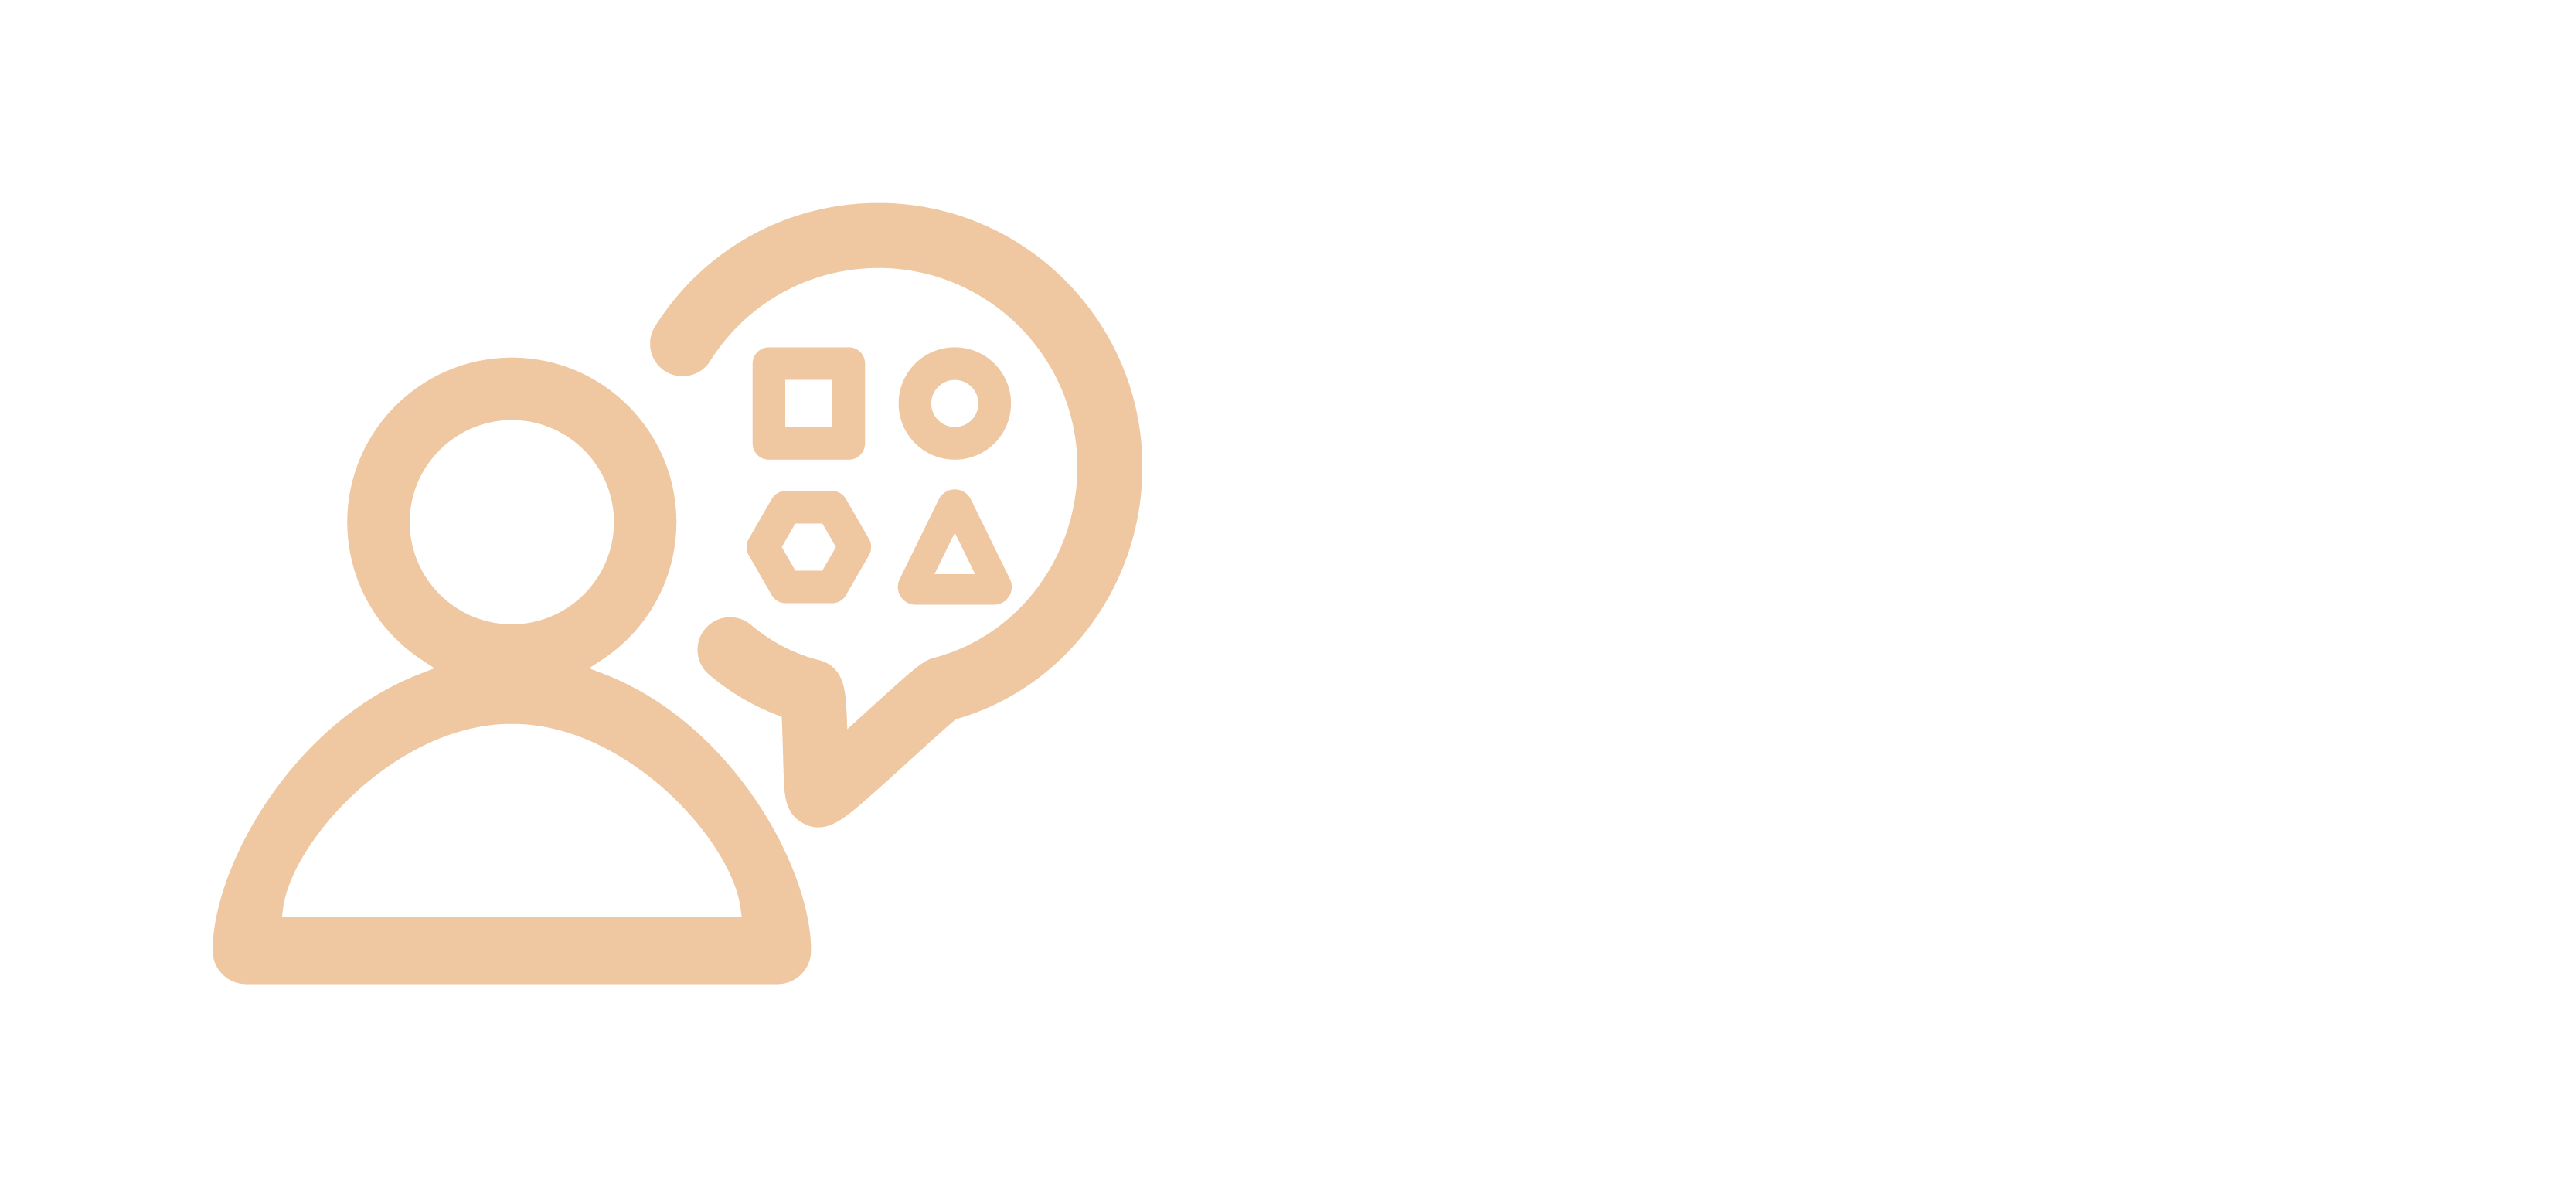 Picto Assistance Technique Inclusion